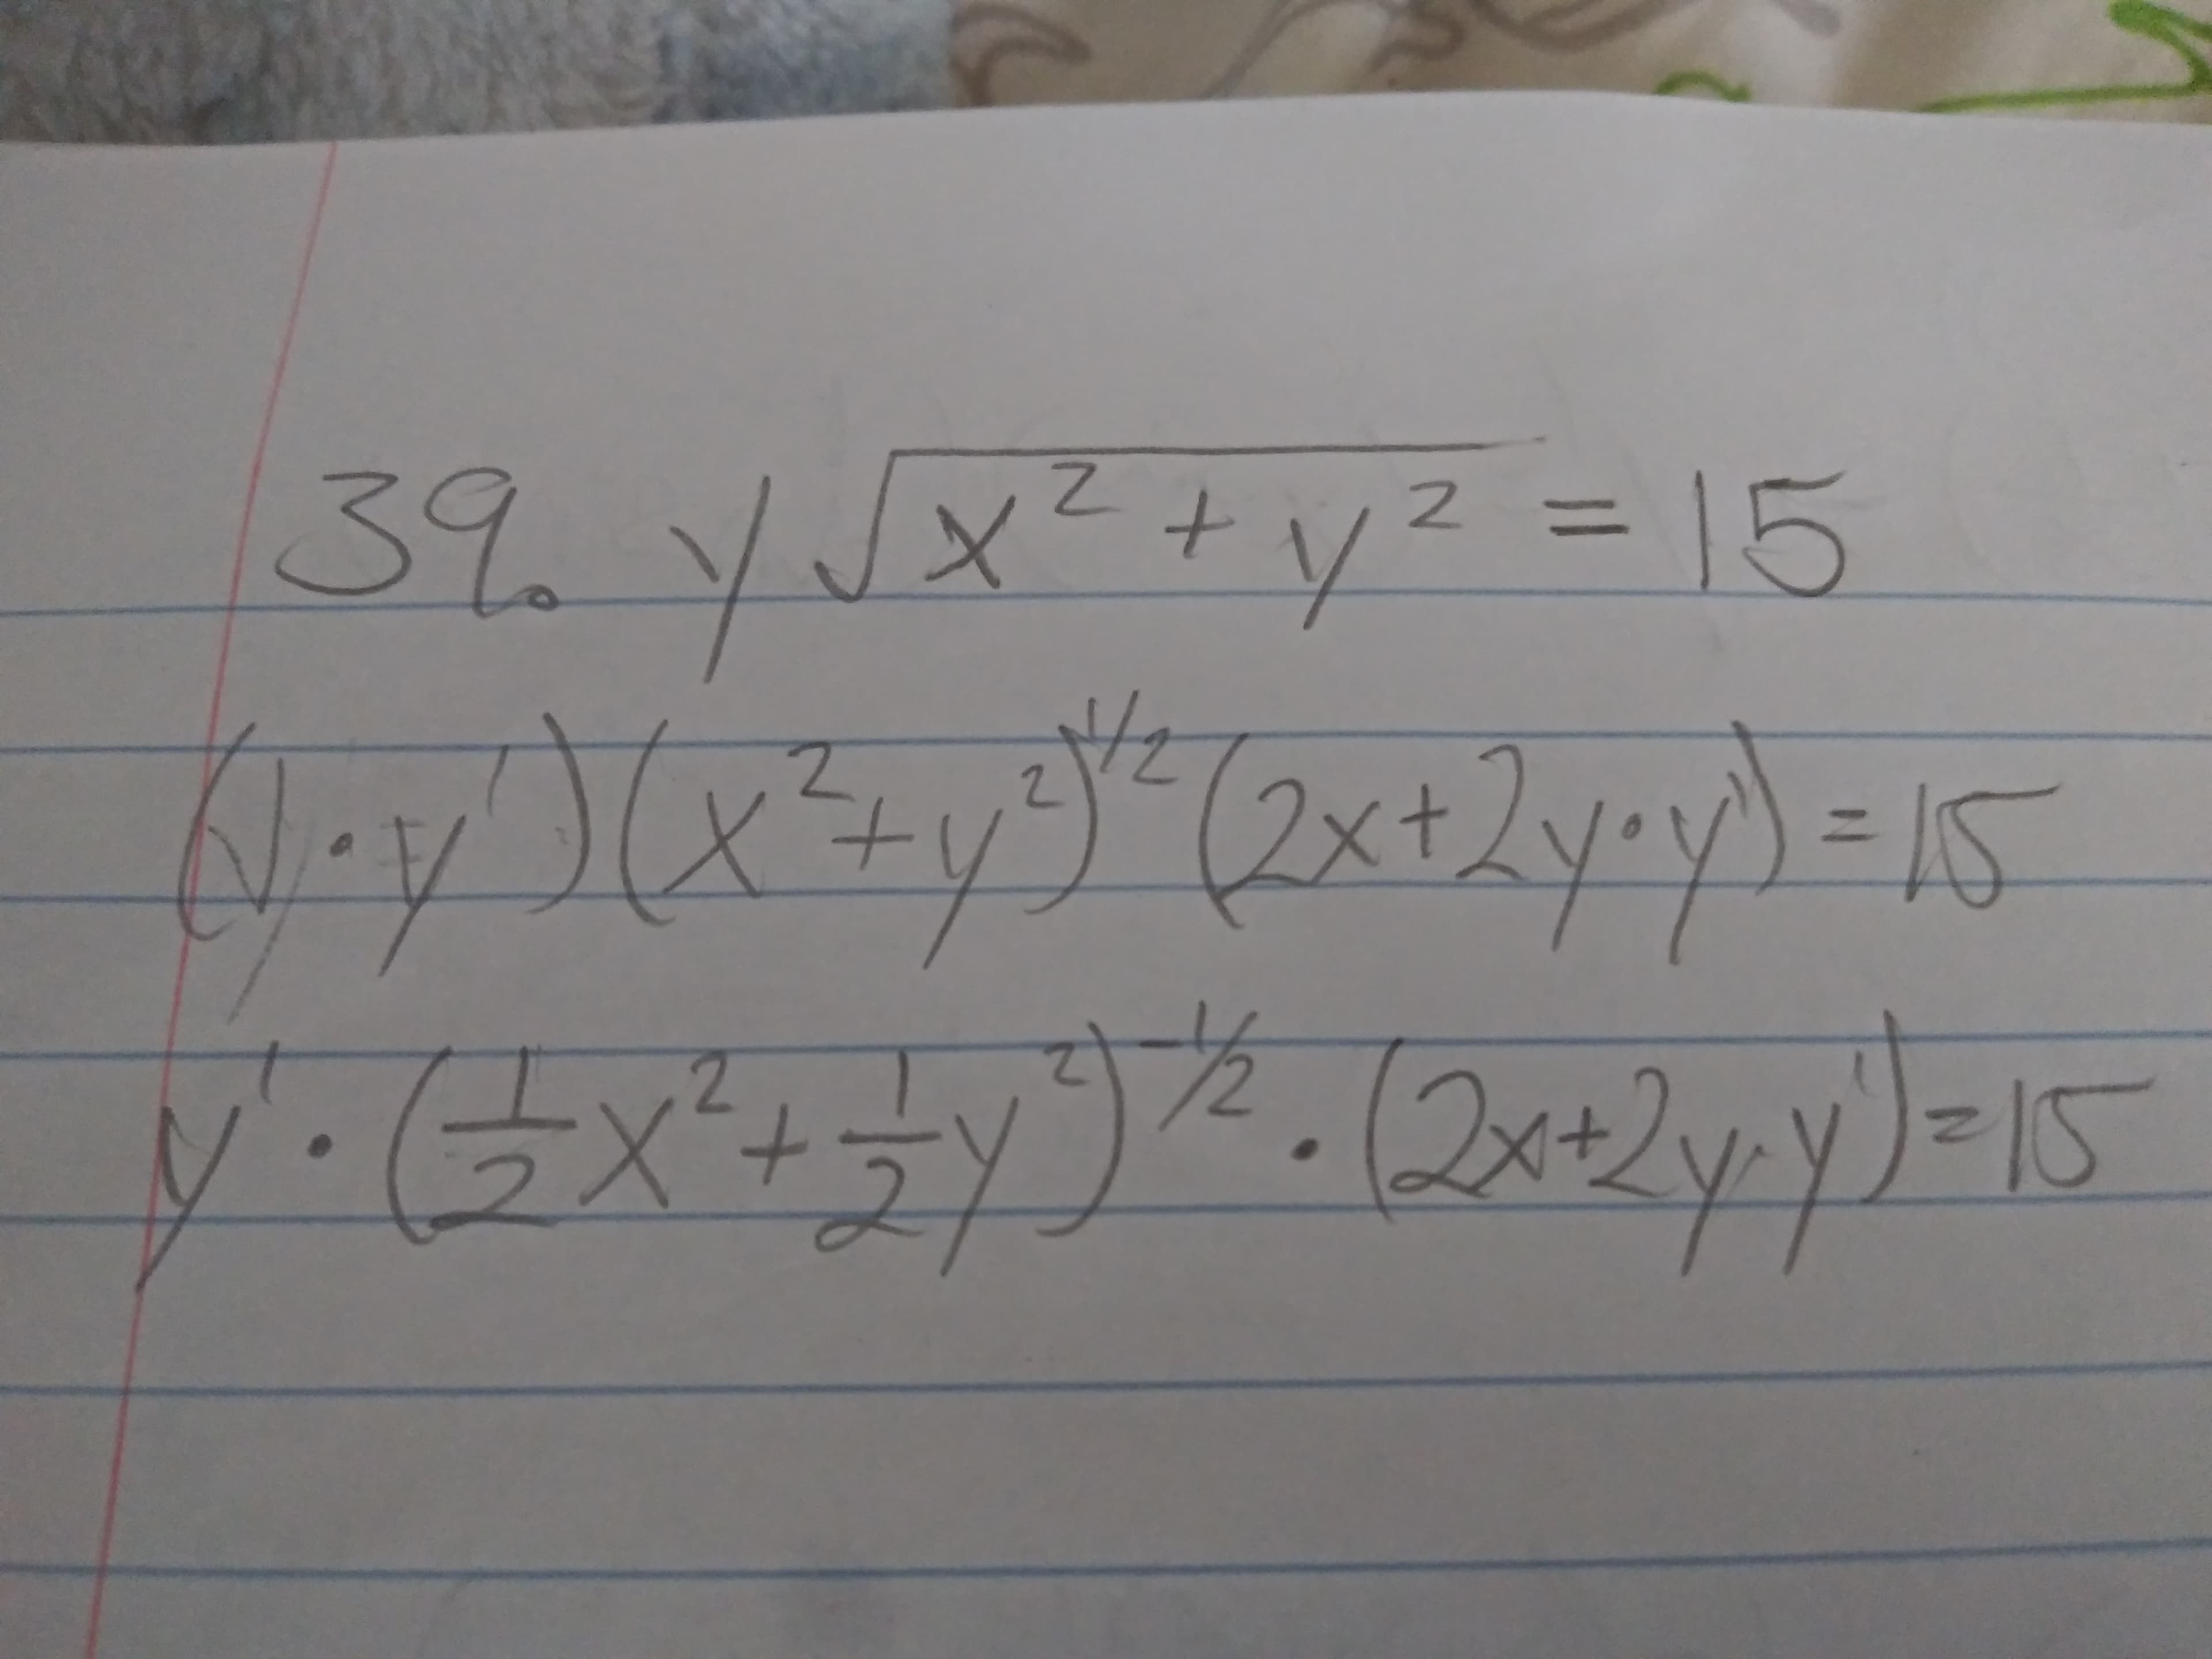 39.Y/x²+y2 =15
2.
y.(x'y*.Delpples
x+x
2x+2
15
